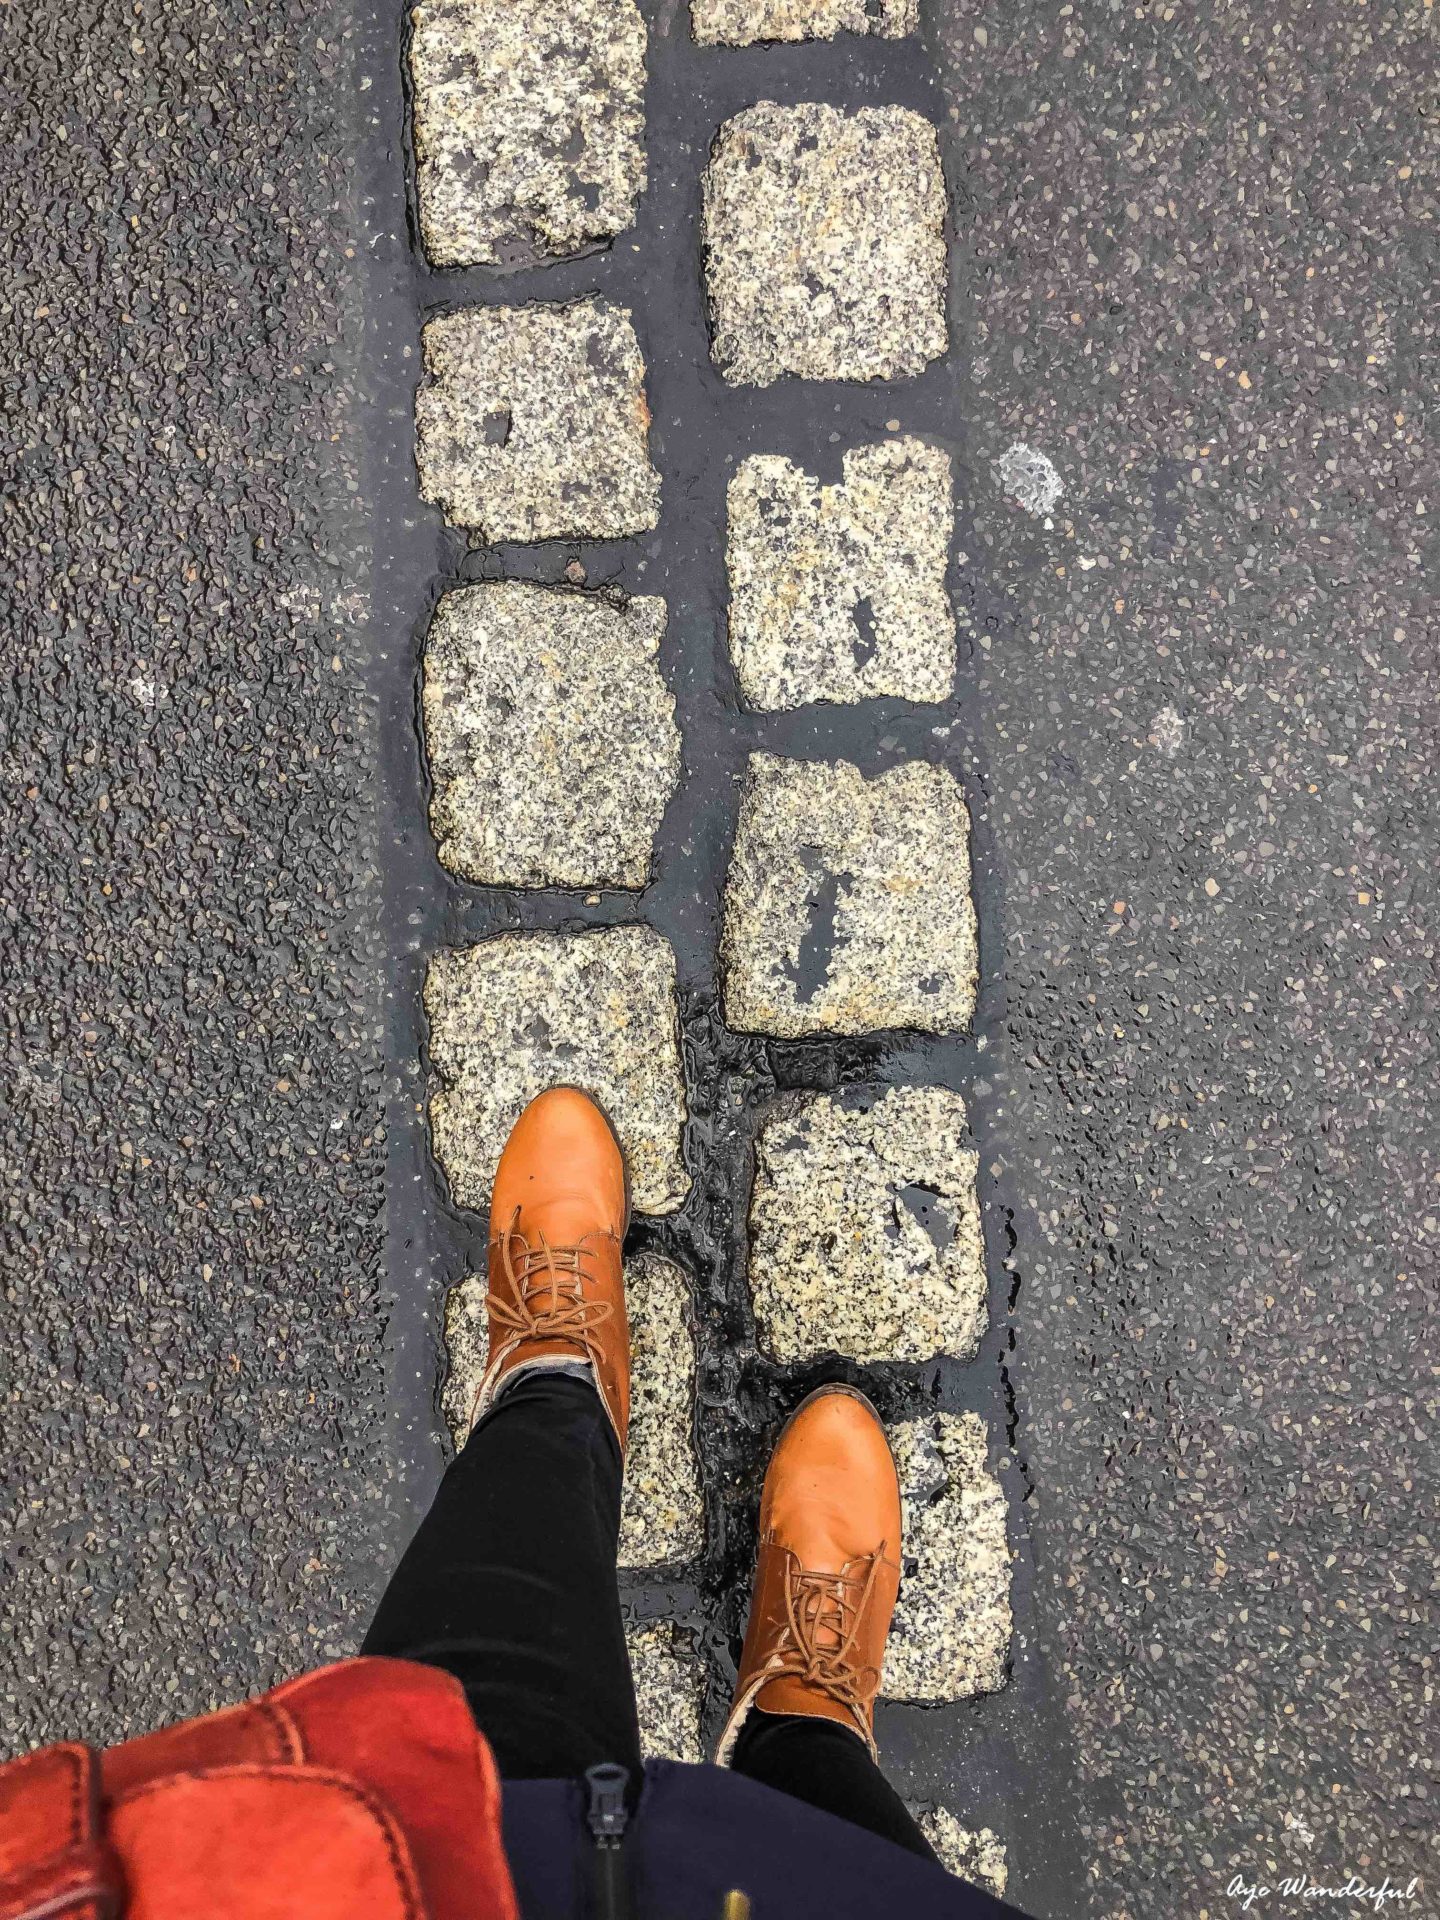 Berlin Wall Cobblestones | Berlin Travel Guide | Berlin City Guide | 3 days in Berlin